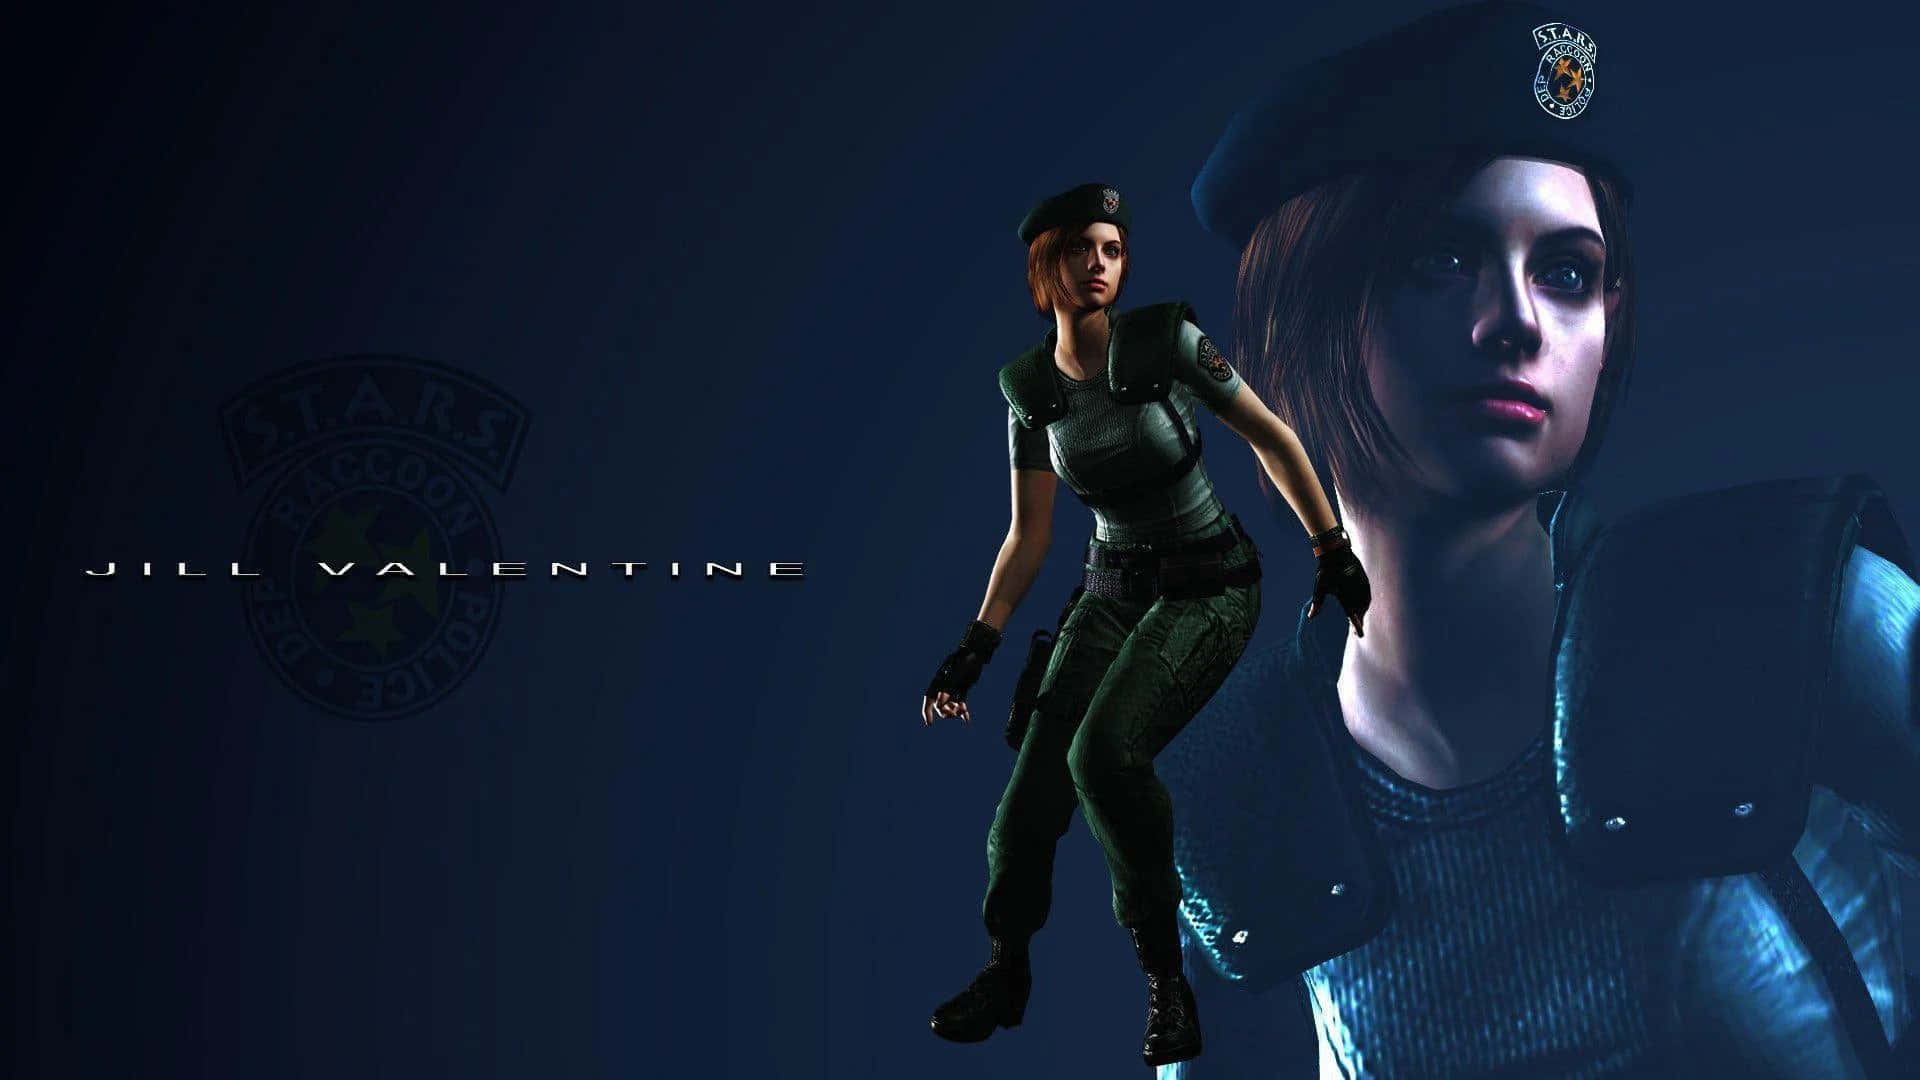 Jill Valentine - The Fearless Heroine Of Resident Evil Wallpaper